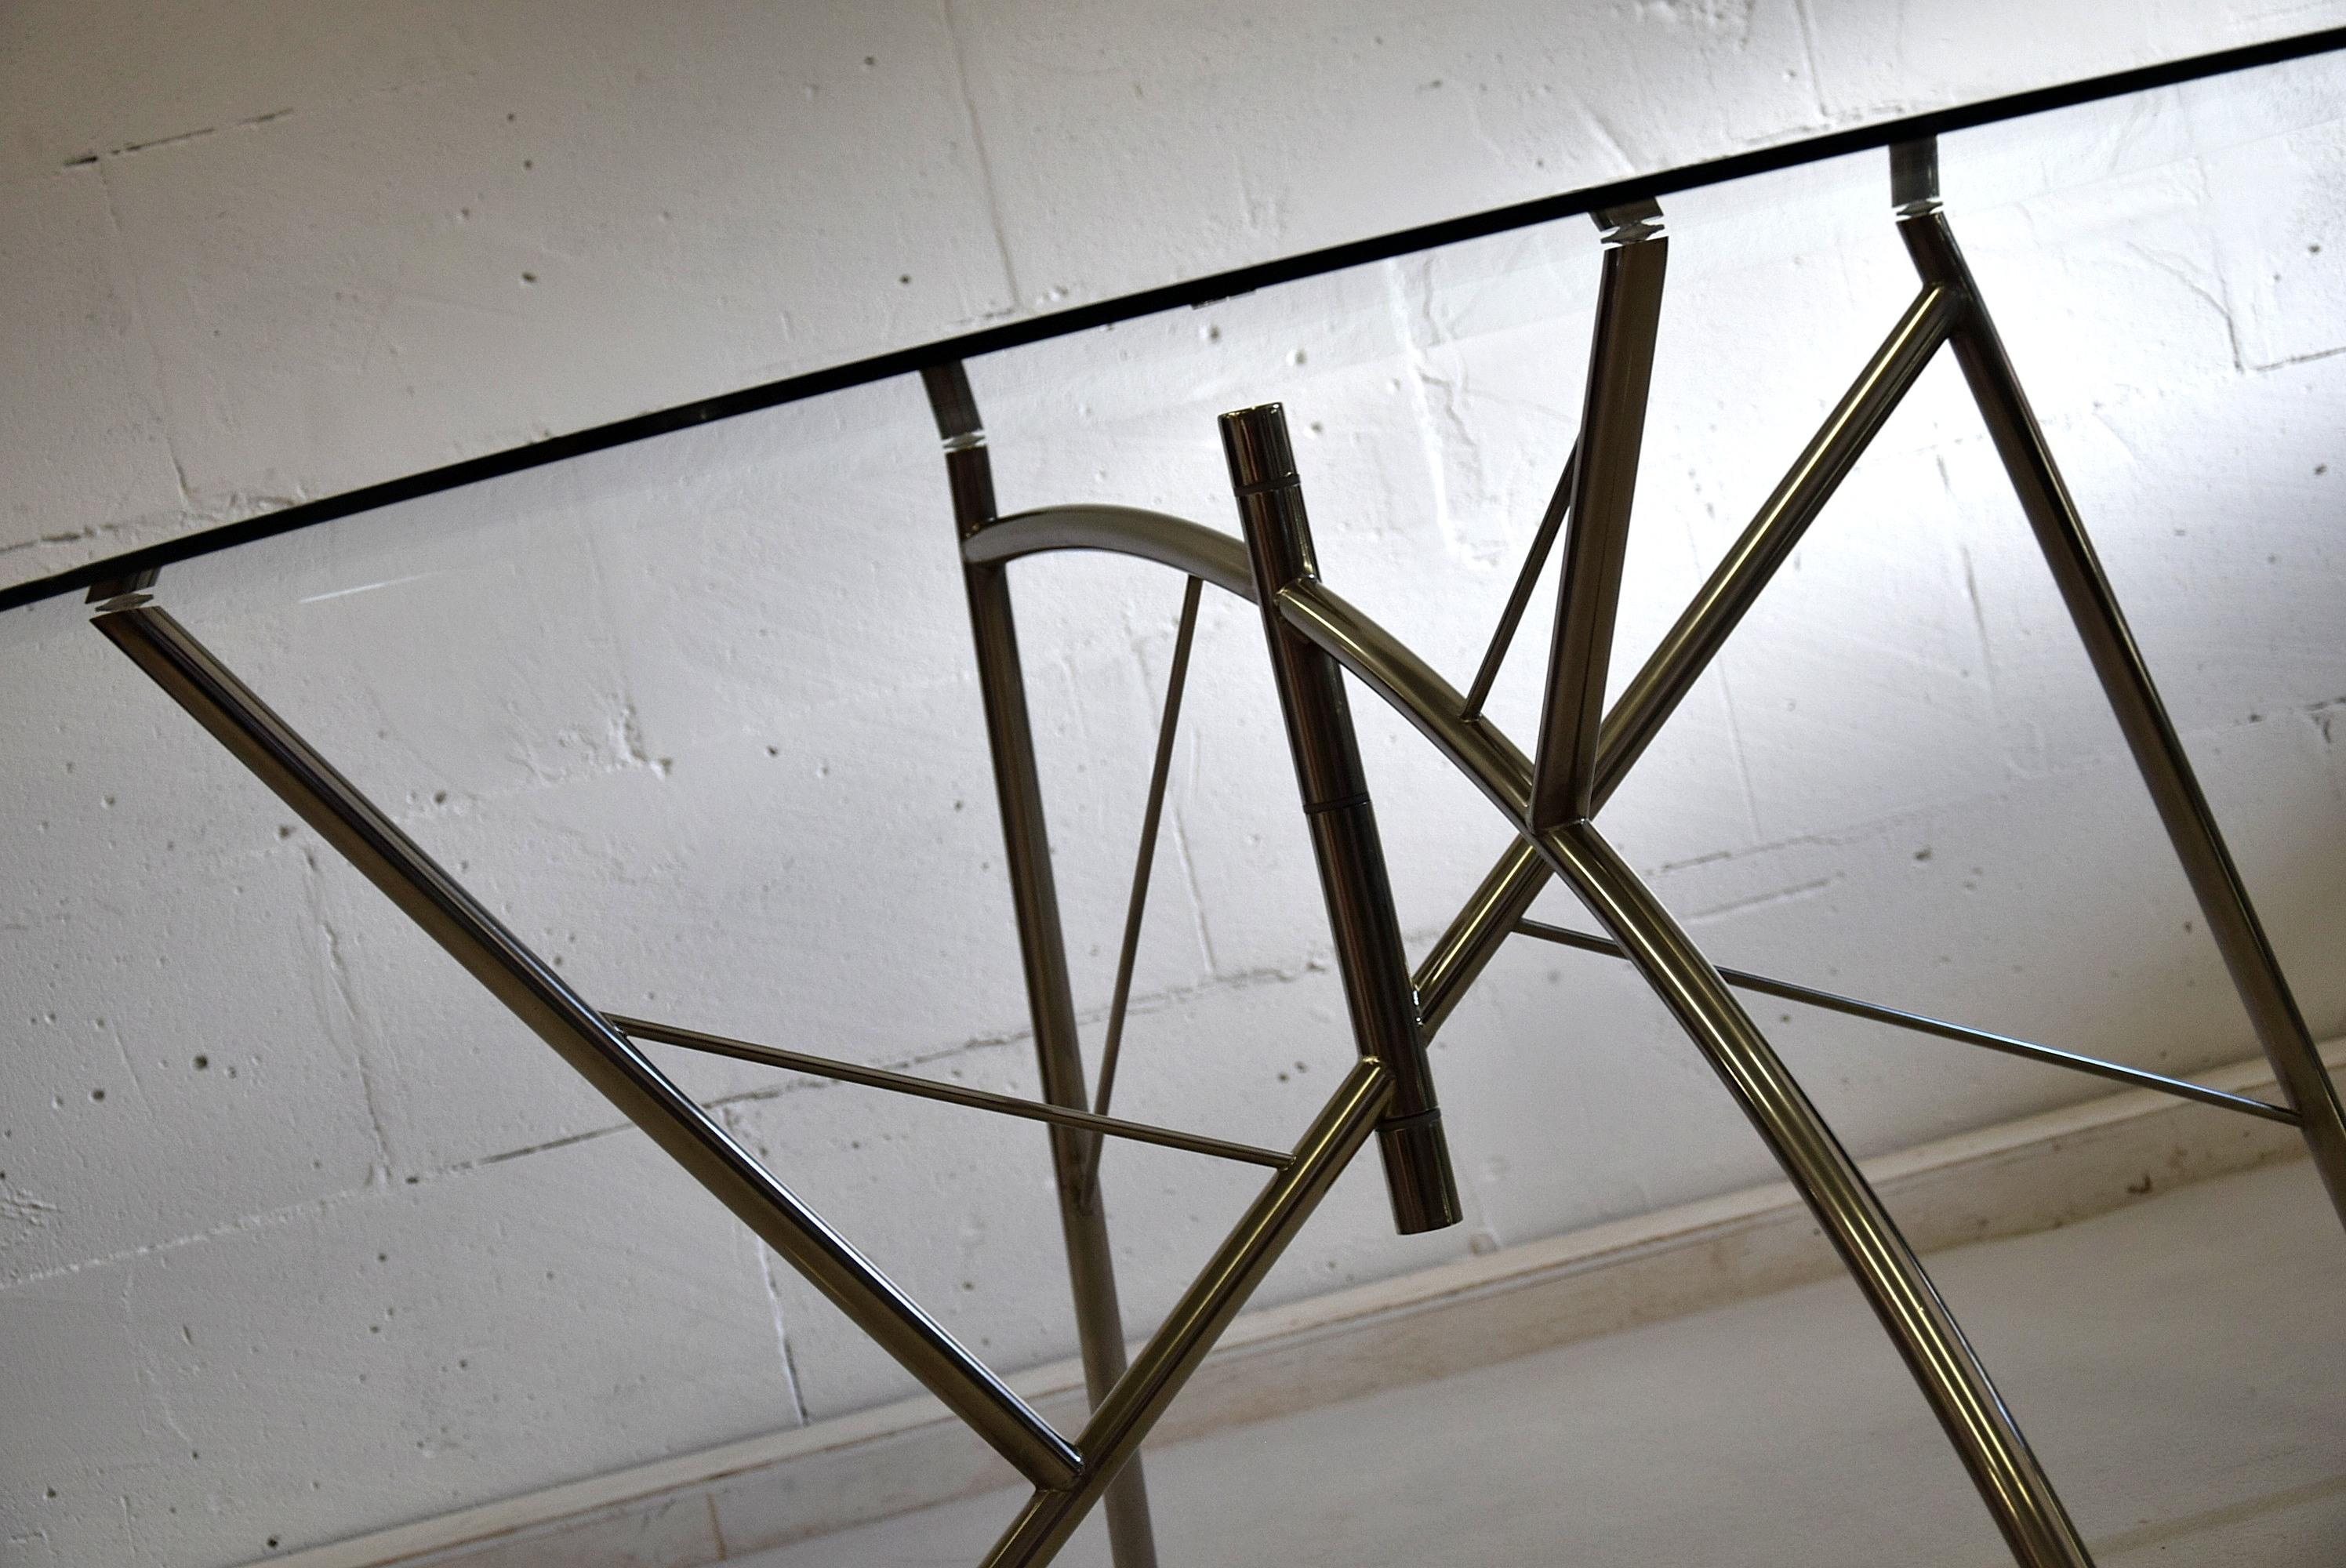 Table à manger Dole Melipone conçue par Philippe Starck en 1981 et produite par XO en France, la toute première édition.
Cette pièce rare, qui a été retirée de la production pendant longtemps, est en excellent état. La base nickelée est parfaite et